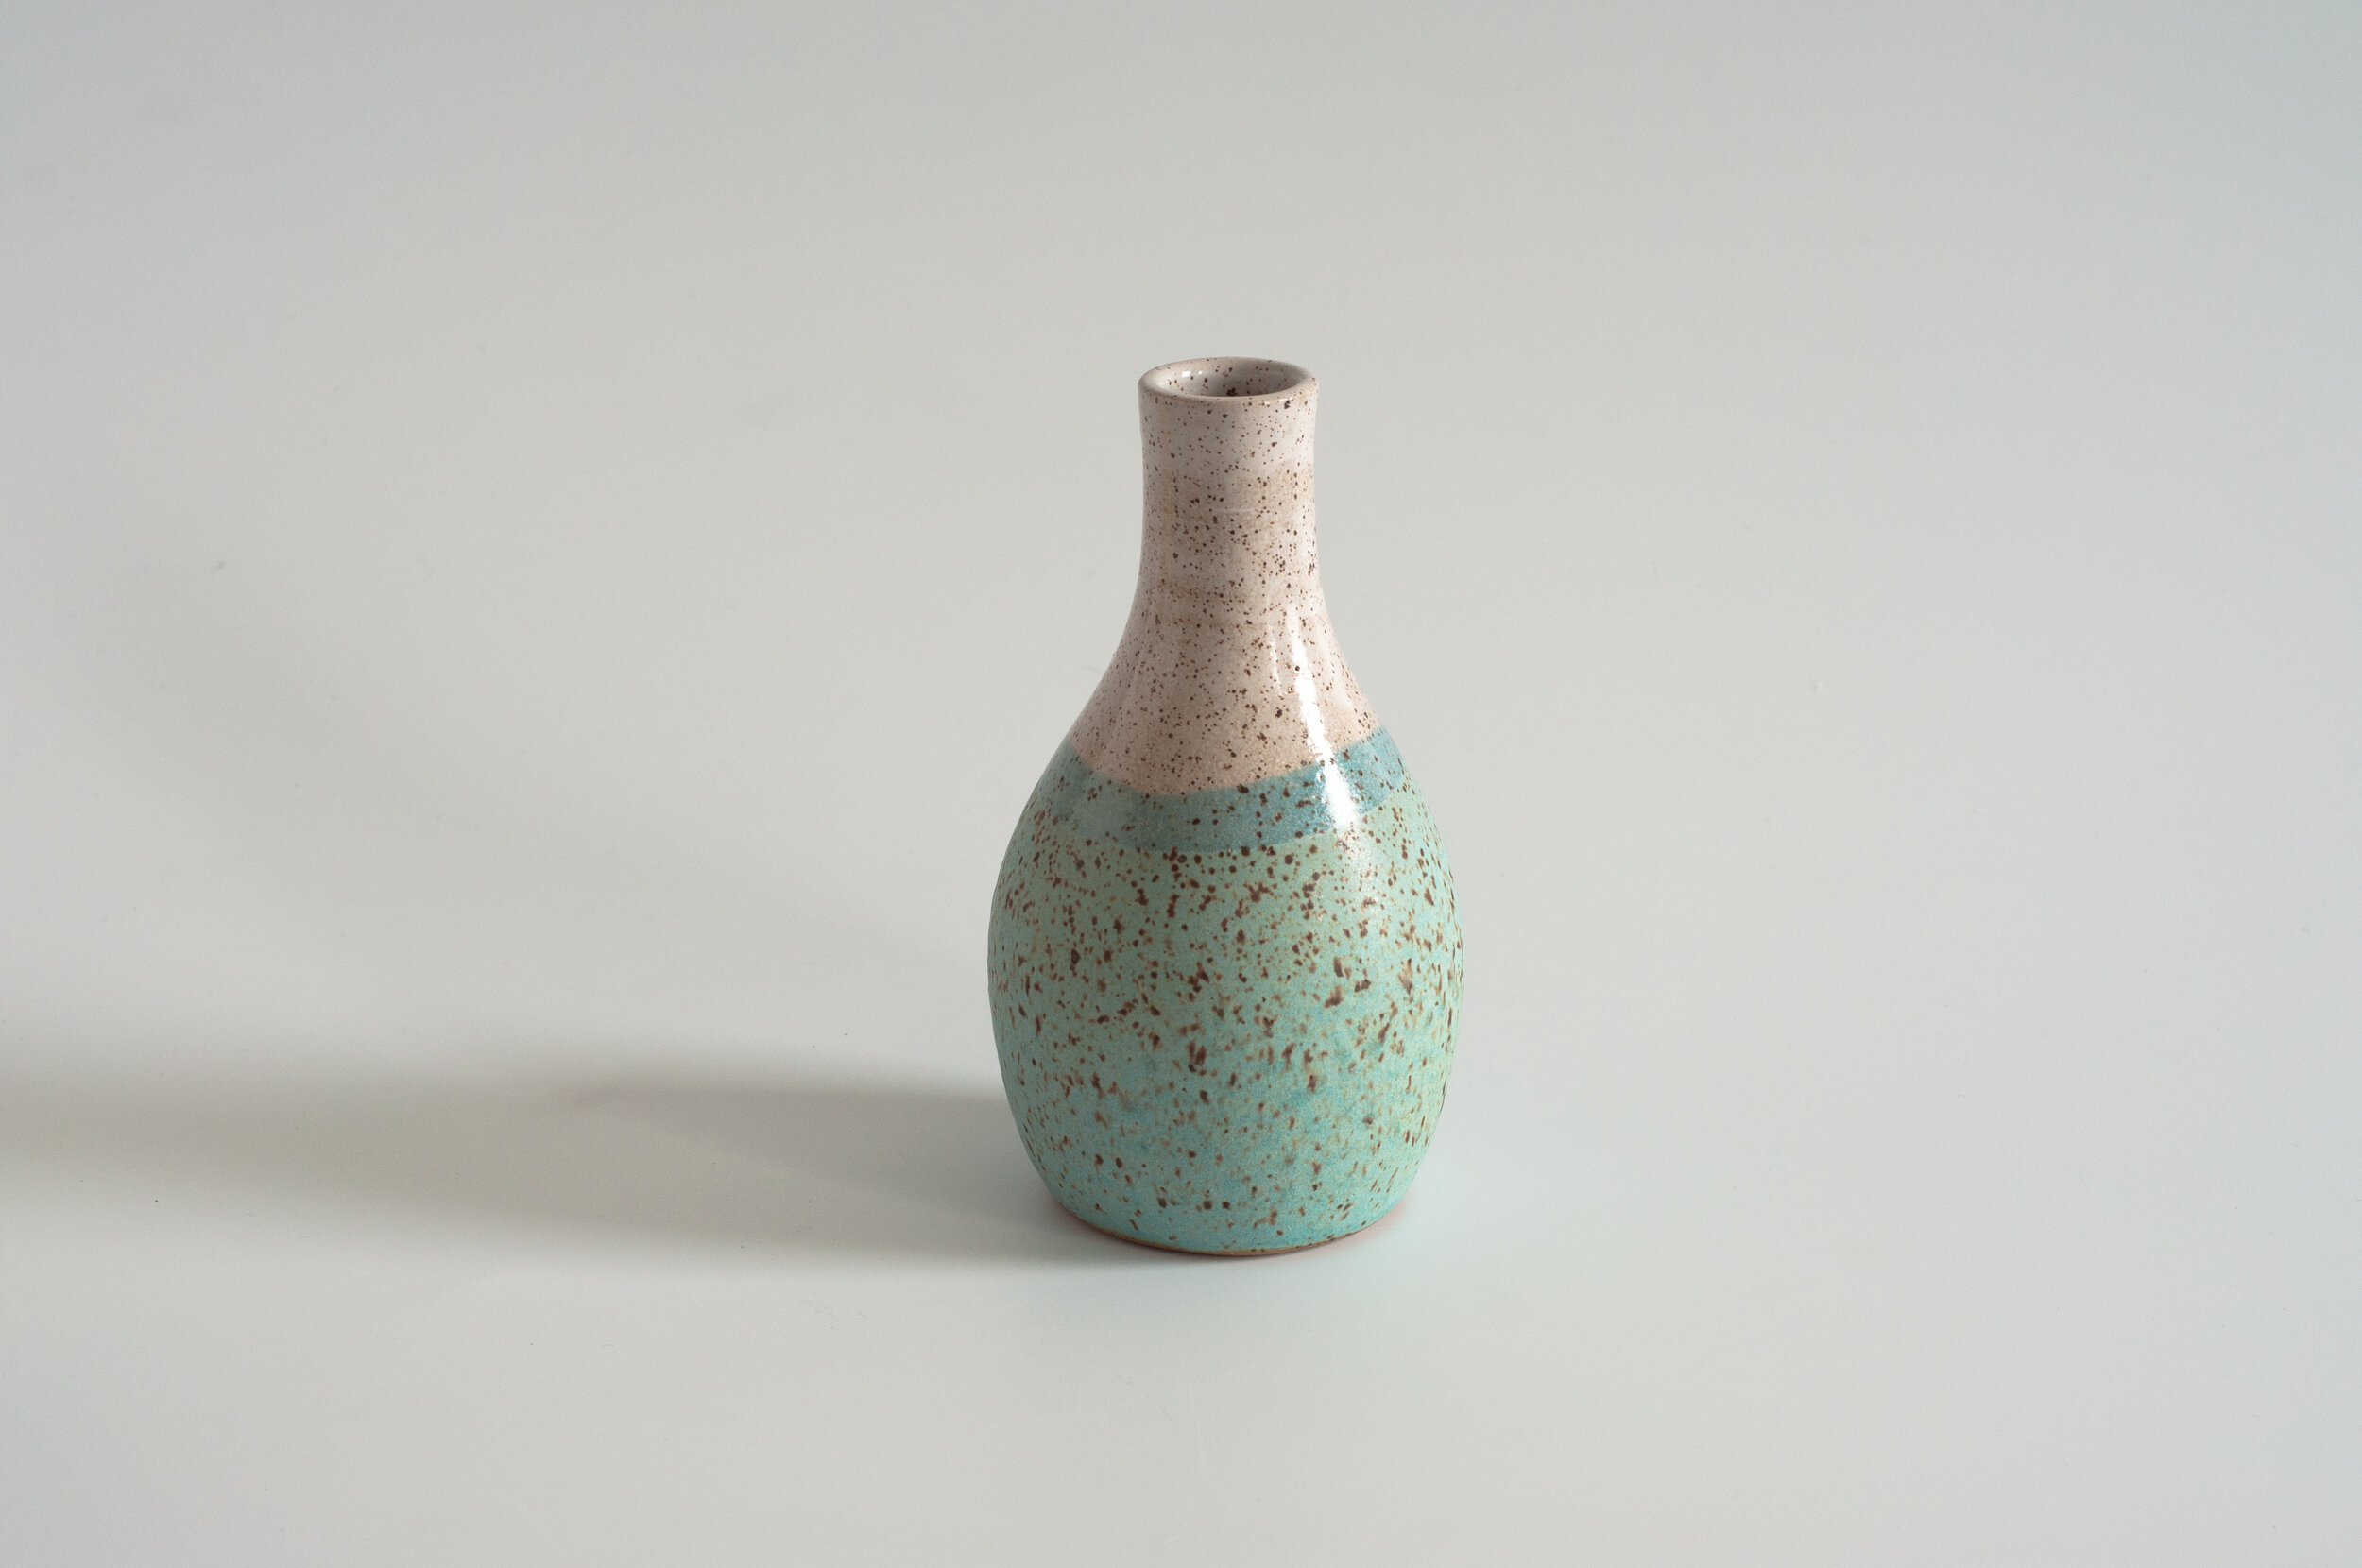 Bottle Shaped Vase Ceramic Bud Vase Large In Pink White Blue & Grey Xtra Large 